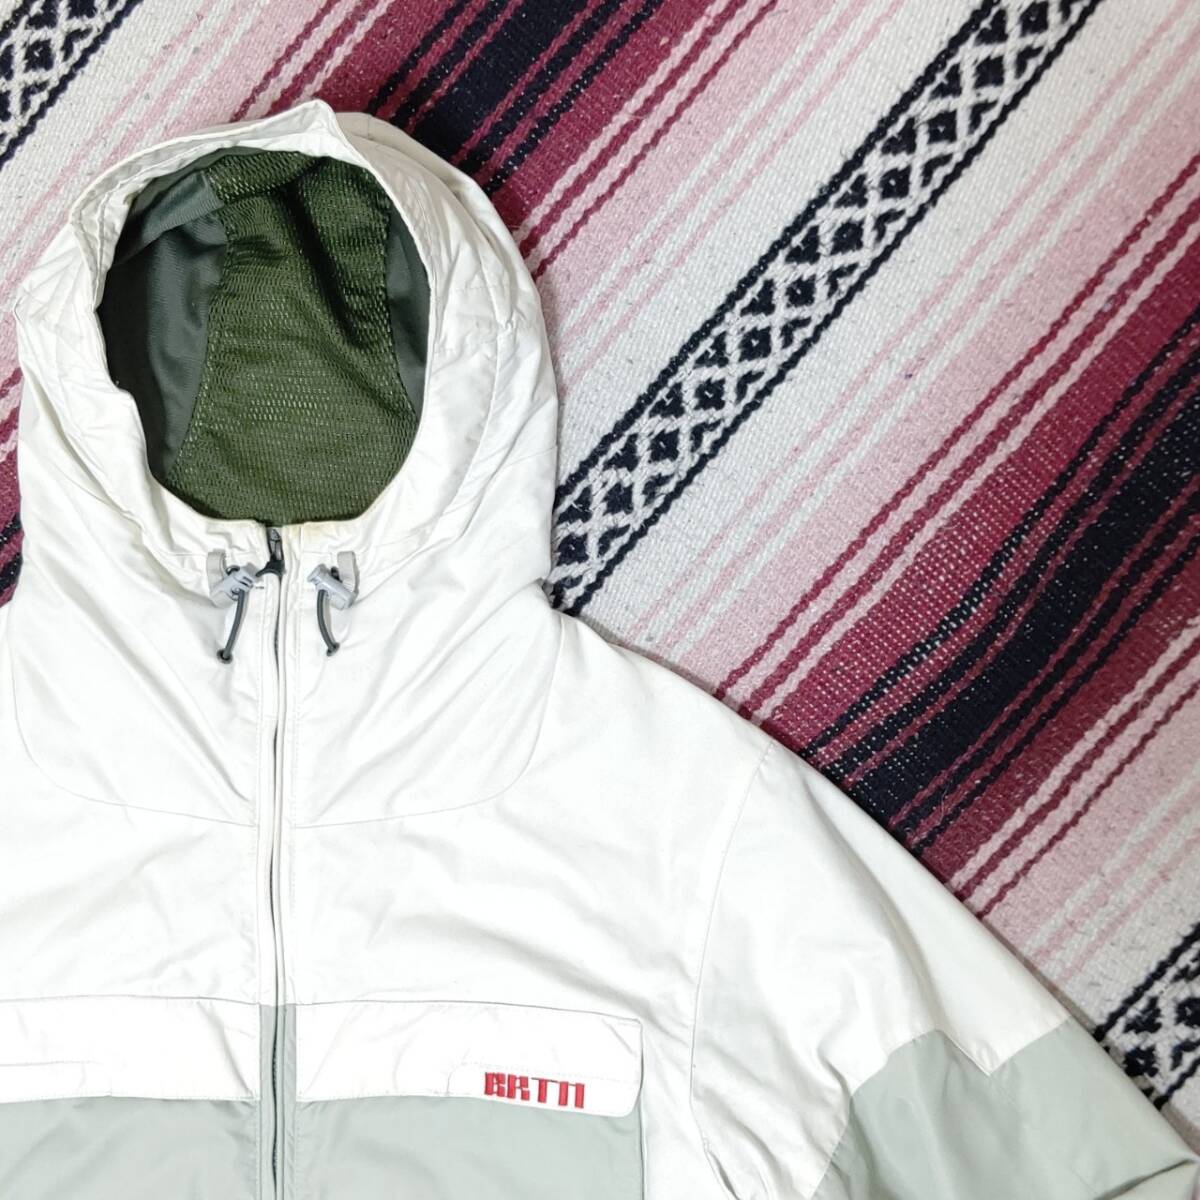  small size *[BURTON] Barton snow wear snowboard ski jacket outdoor white gray white ash men's size XS/Y5394j